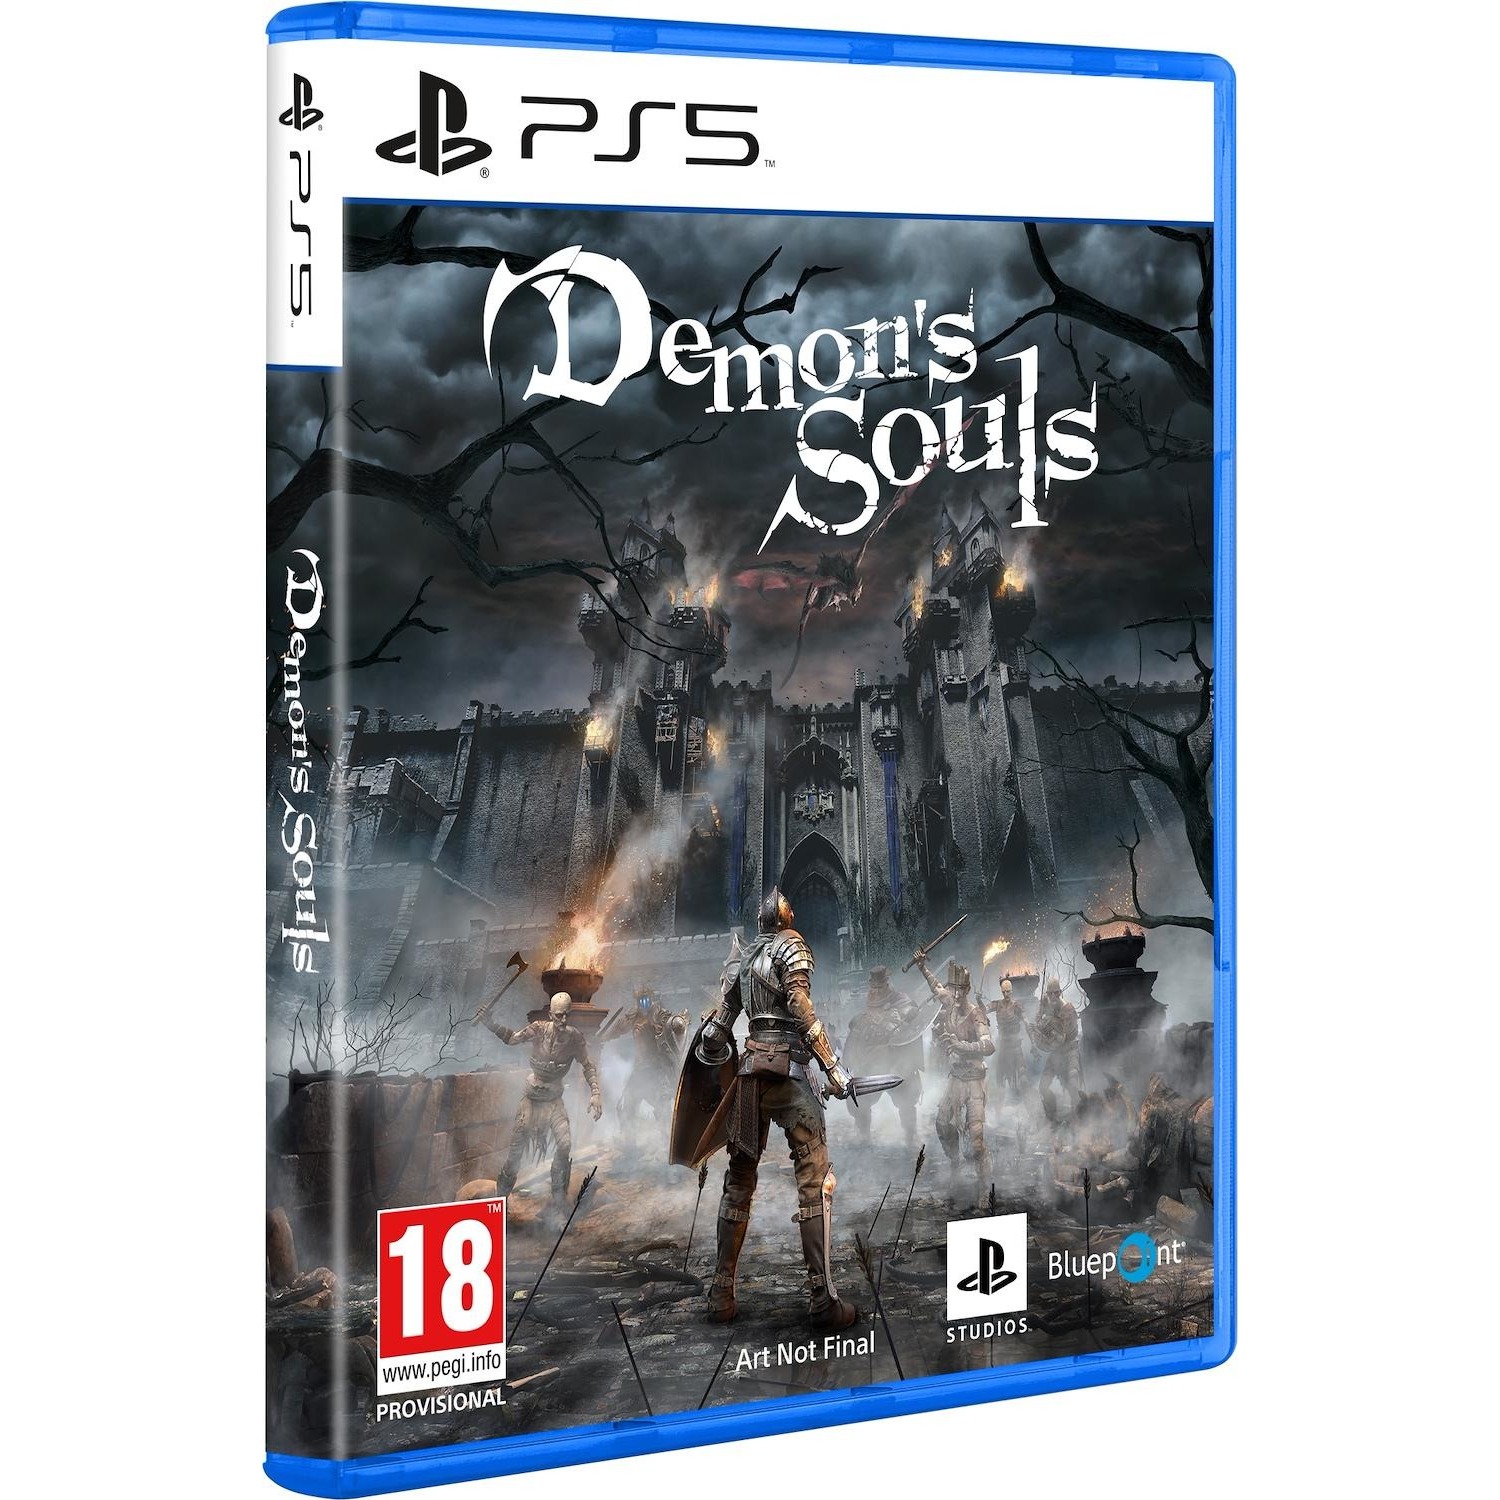 Immagine per Gioco PS5 Demon's Soul Remake da DIMOStore